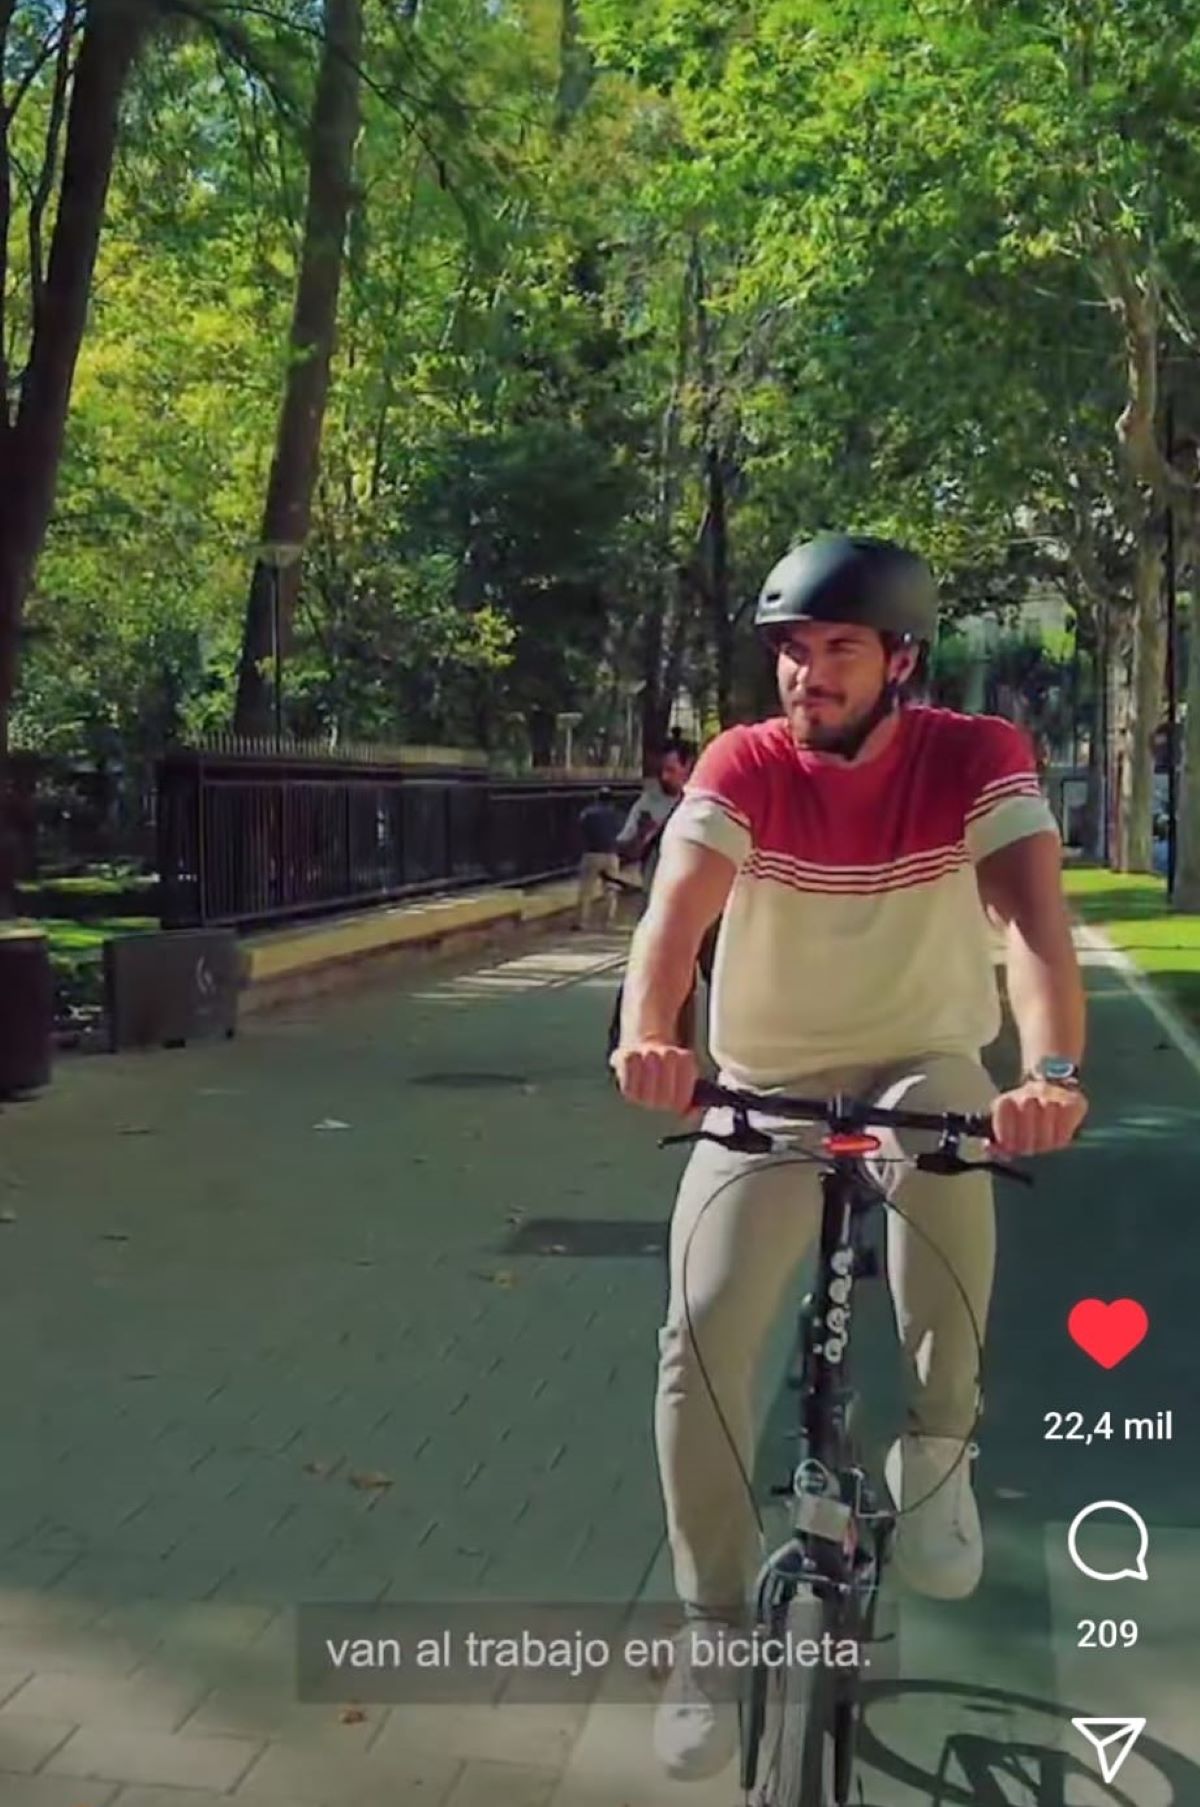 El actor Maxi Iglesias visita Albacete en bicicleta